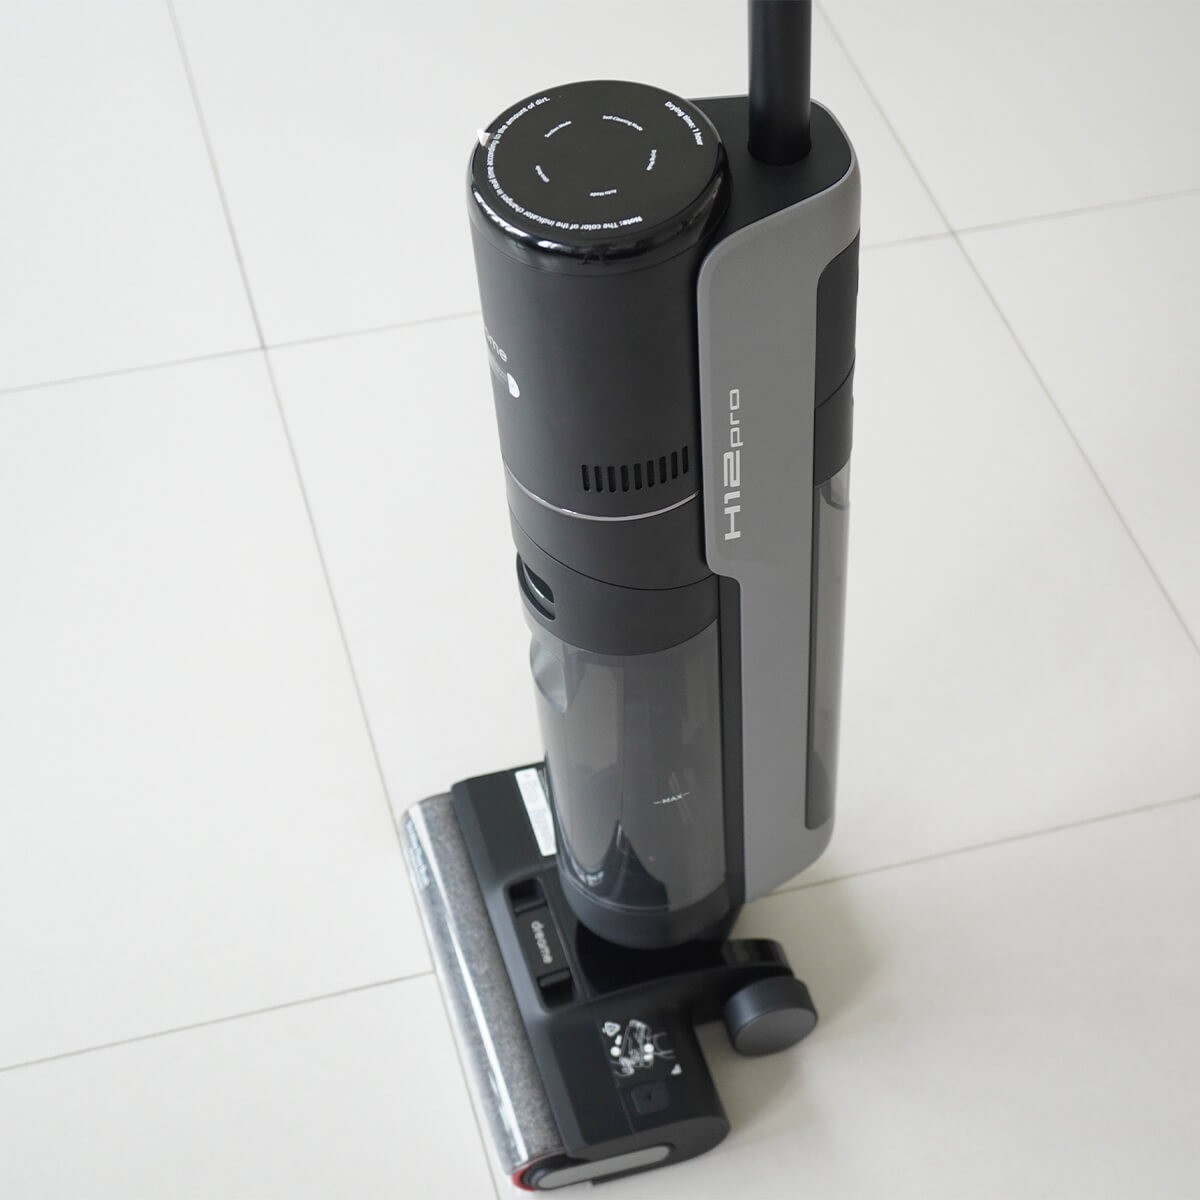 Пылесос Dreame Wet & Dry Vacuum Cleaner H12 Pro (HHR25A) отзывы - изображения 5